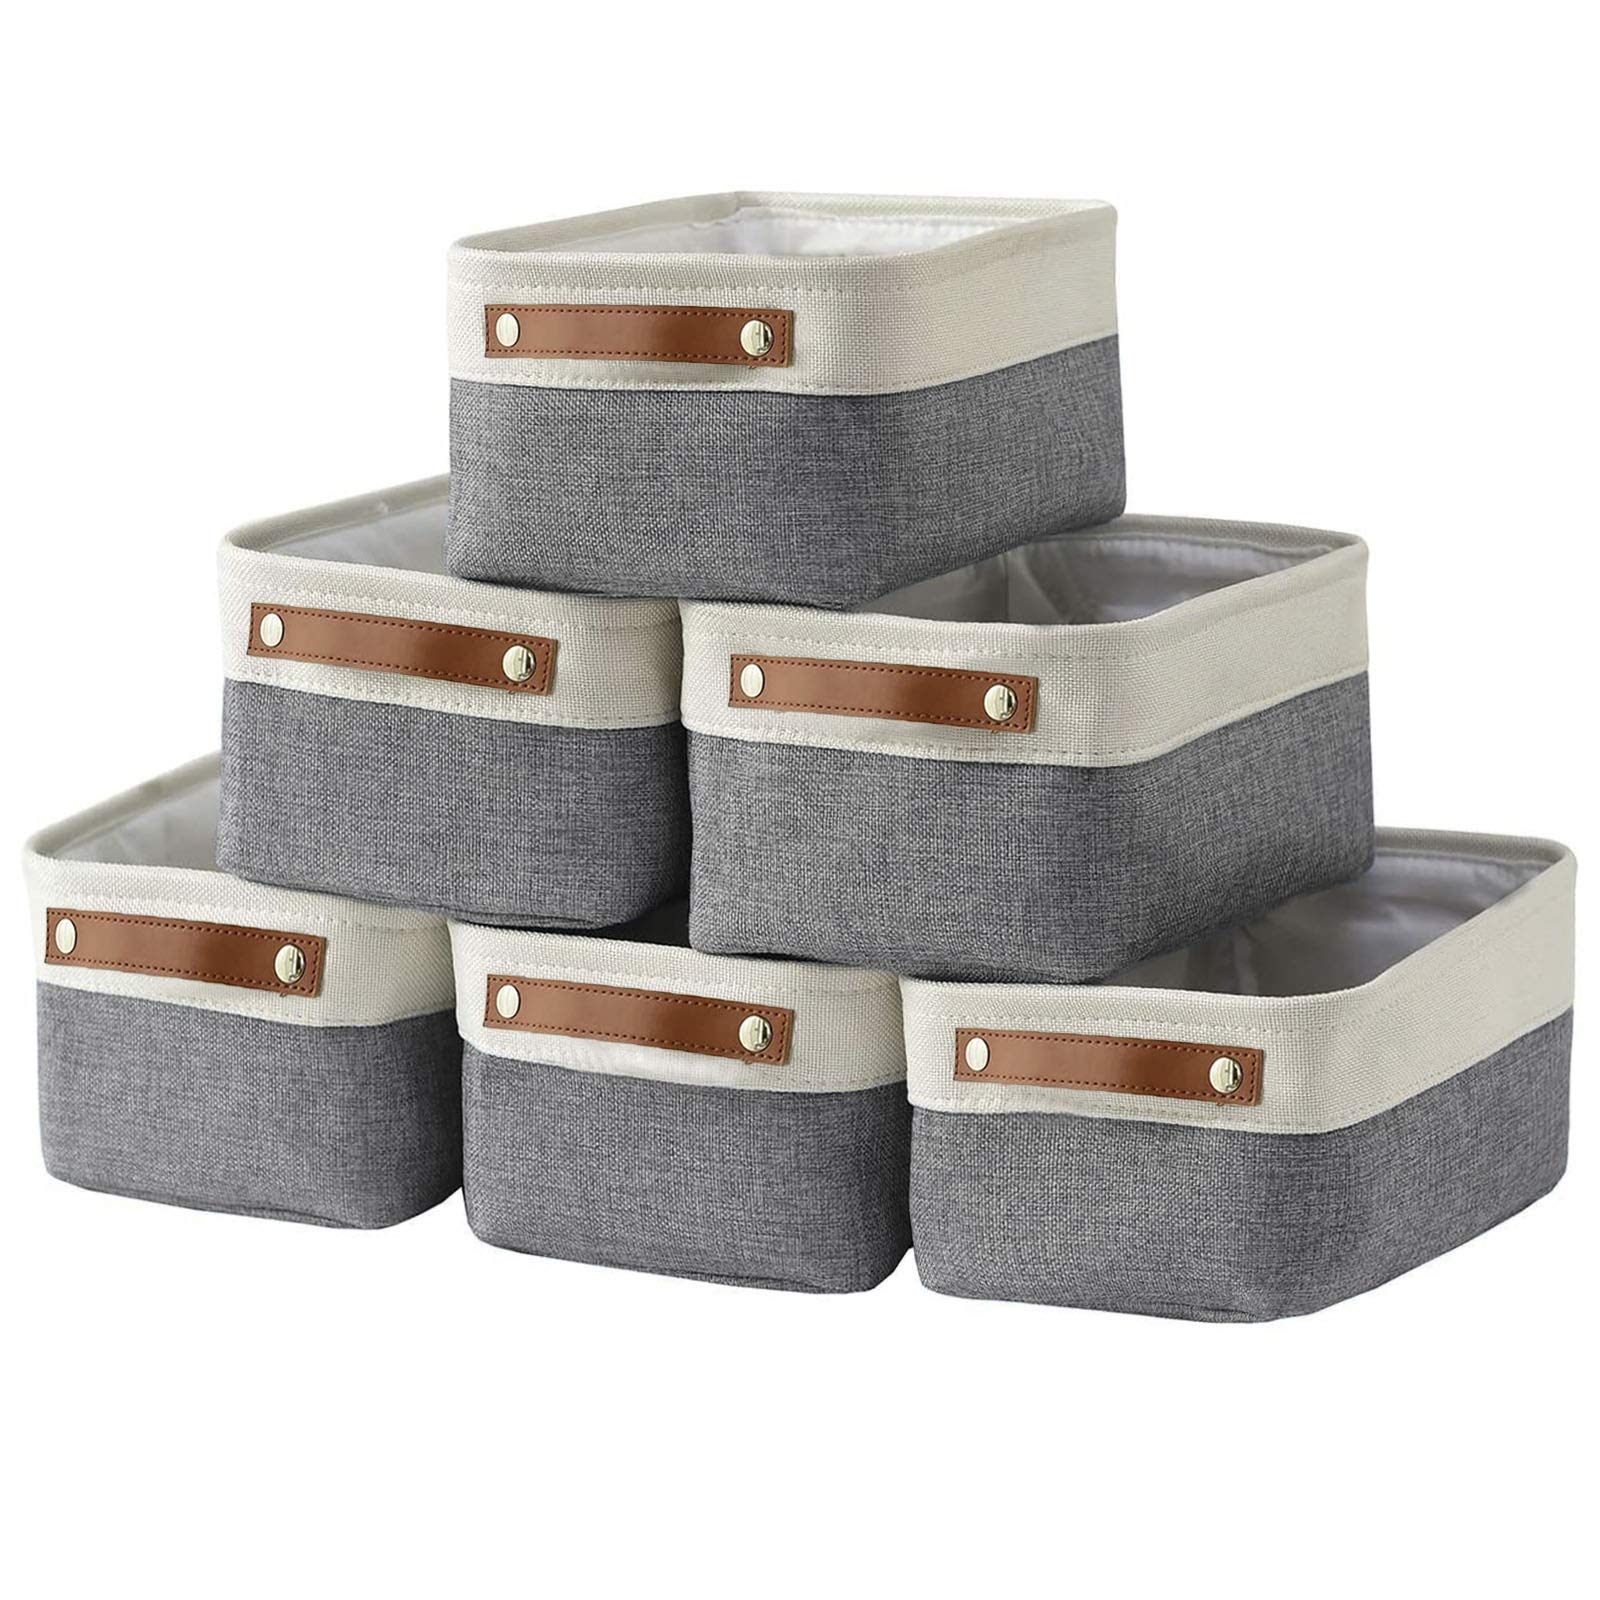 Grey Storage Basket, Small  Small storage basket, Storage baskets